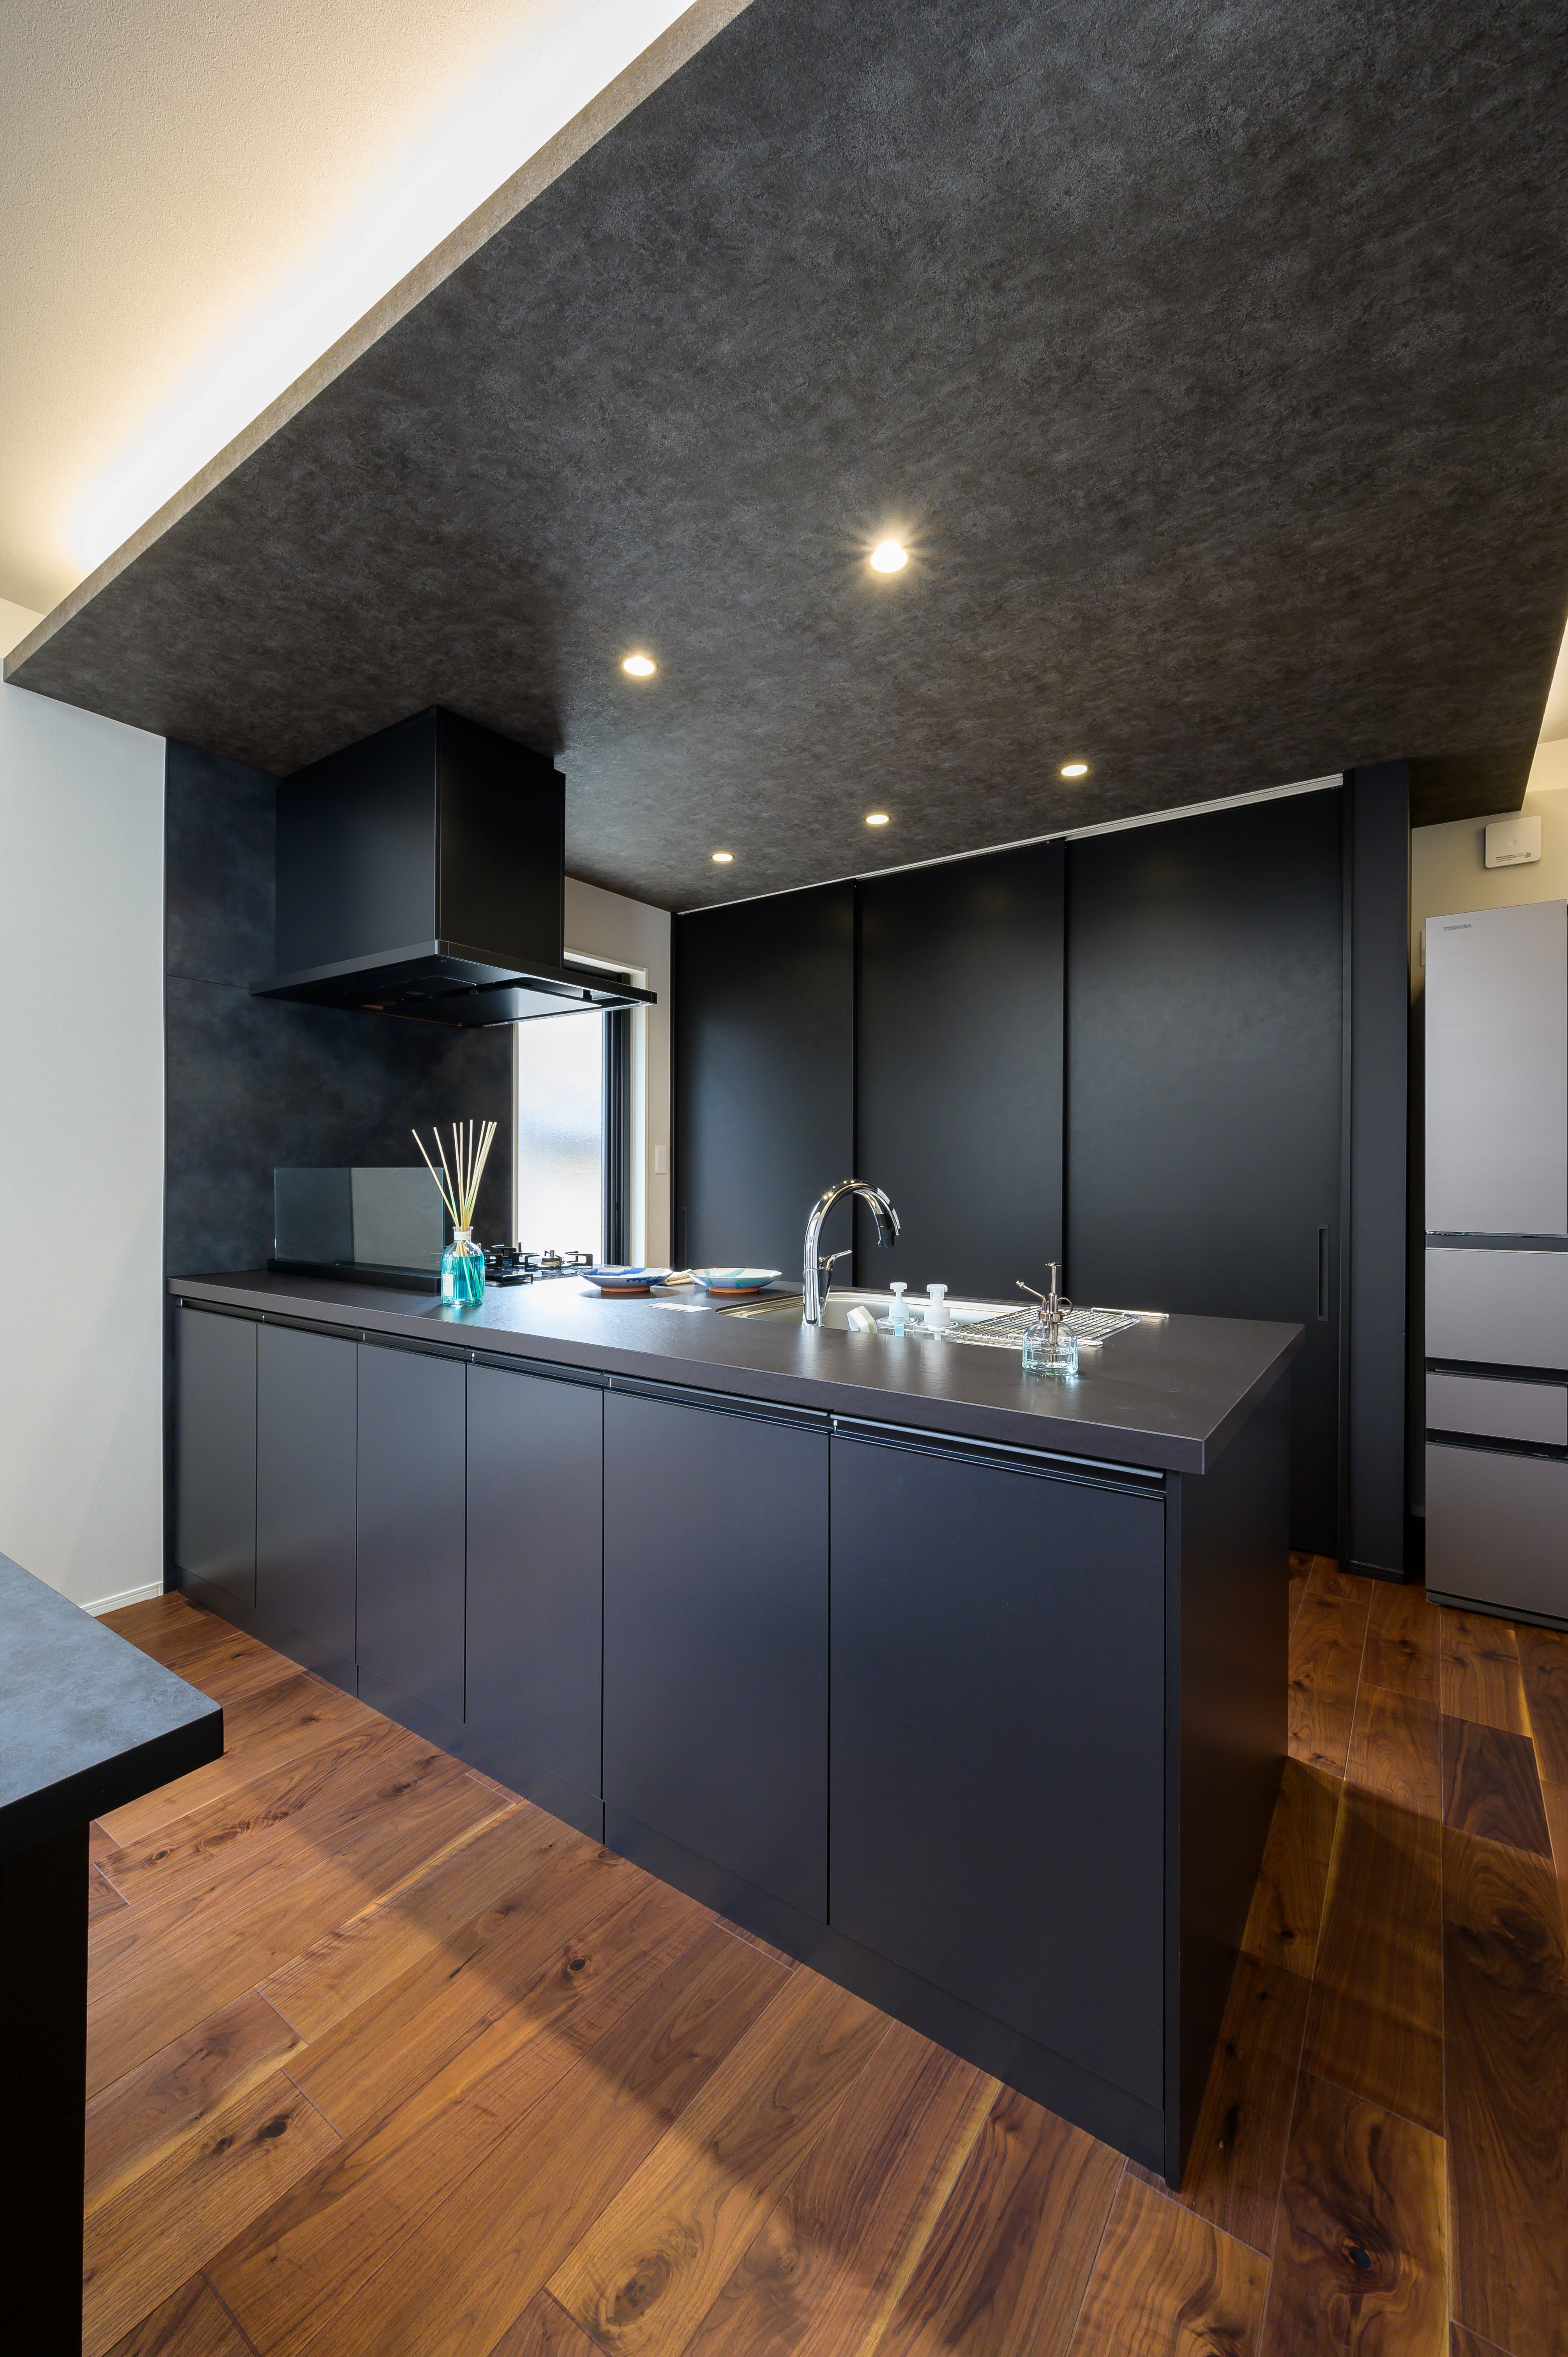 キッチンは背面の収納も含めブラックで統一することで、インパクトを持たせながらスタイリッシュさをプラスしている。